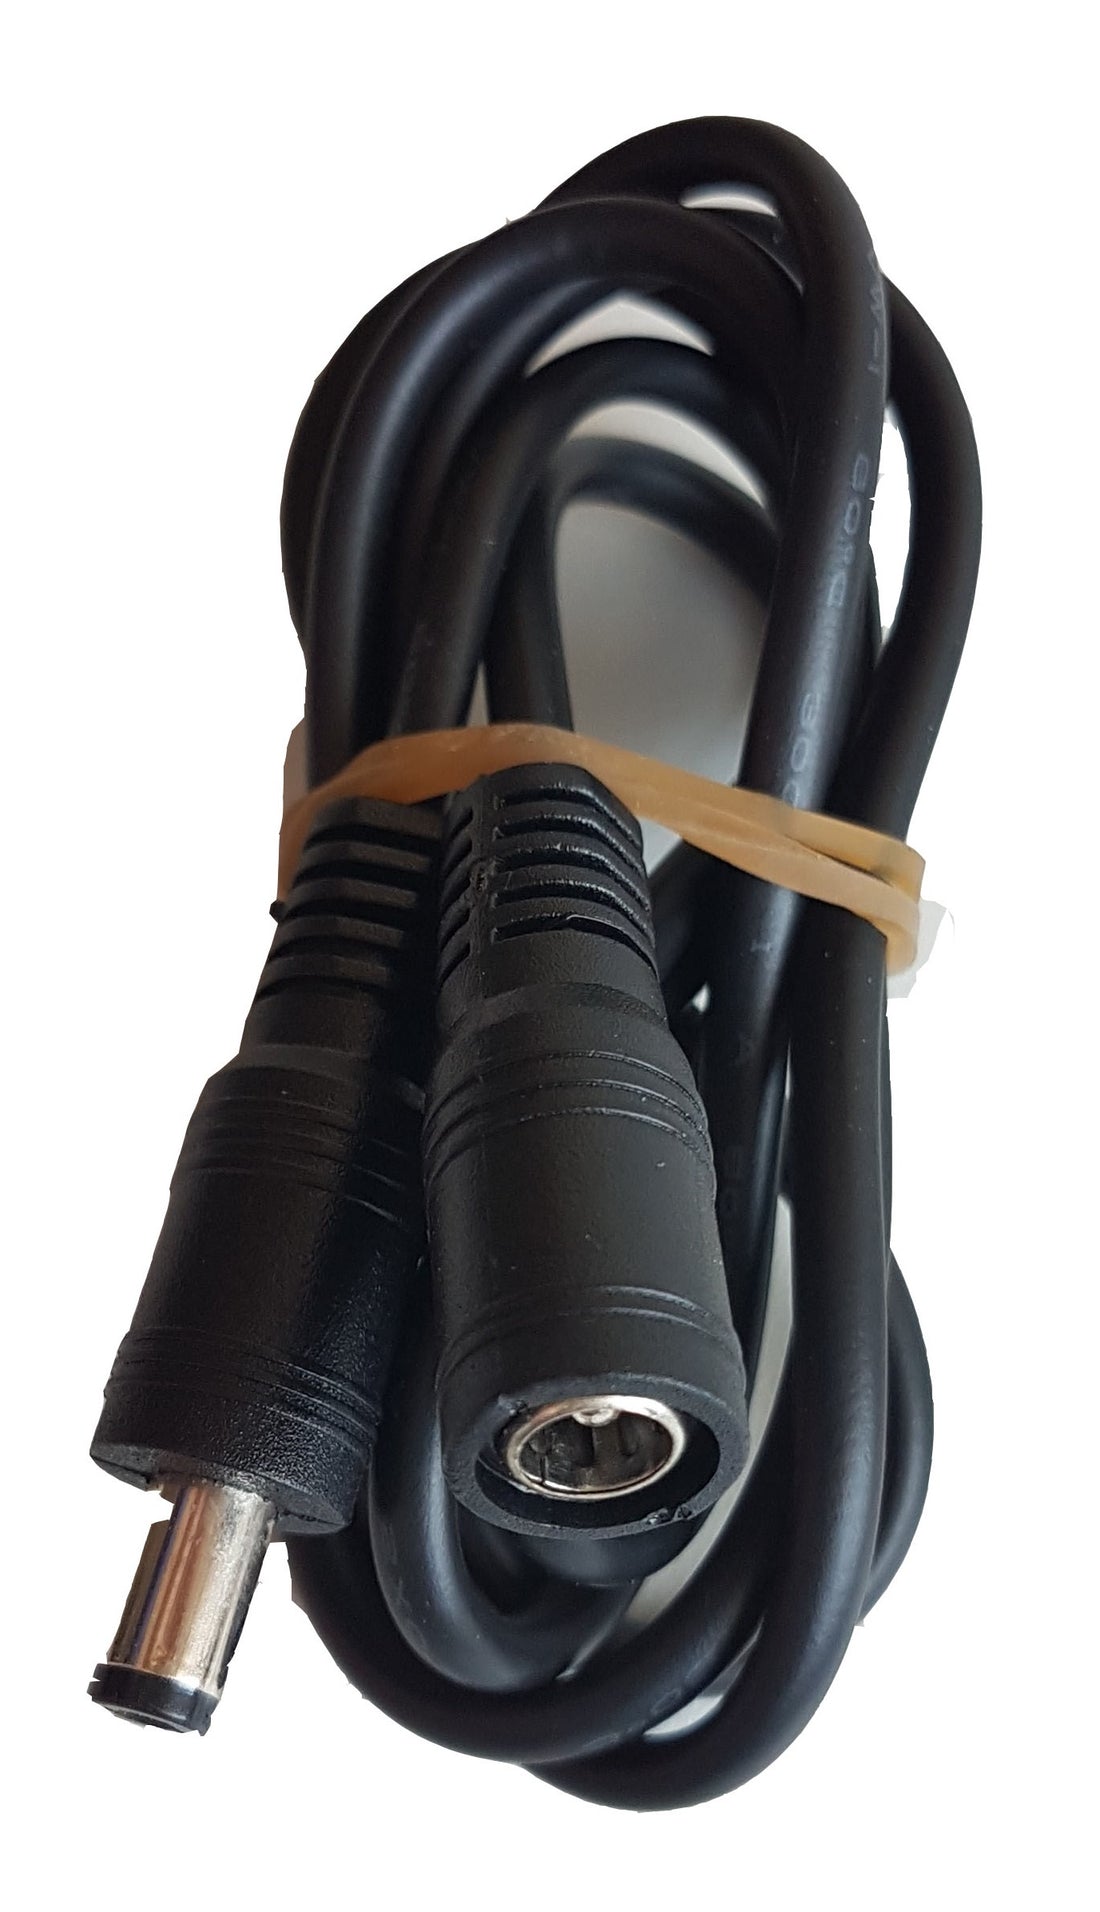 PlasM extension cable 1m (100 cm)